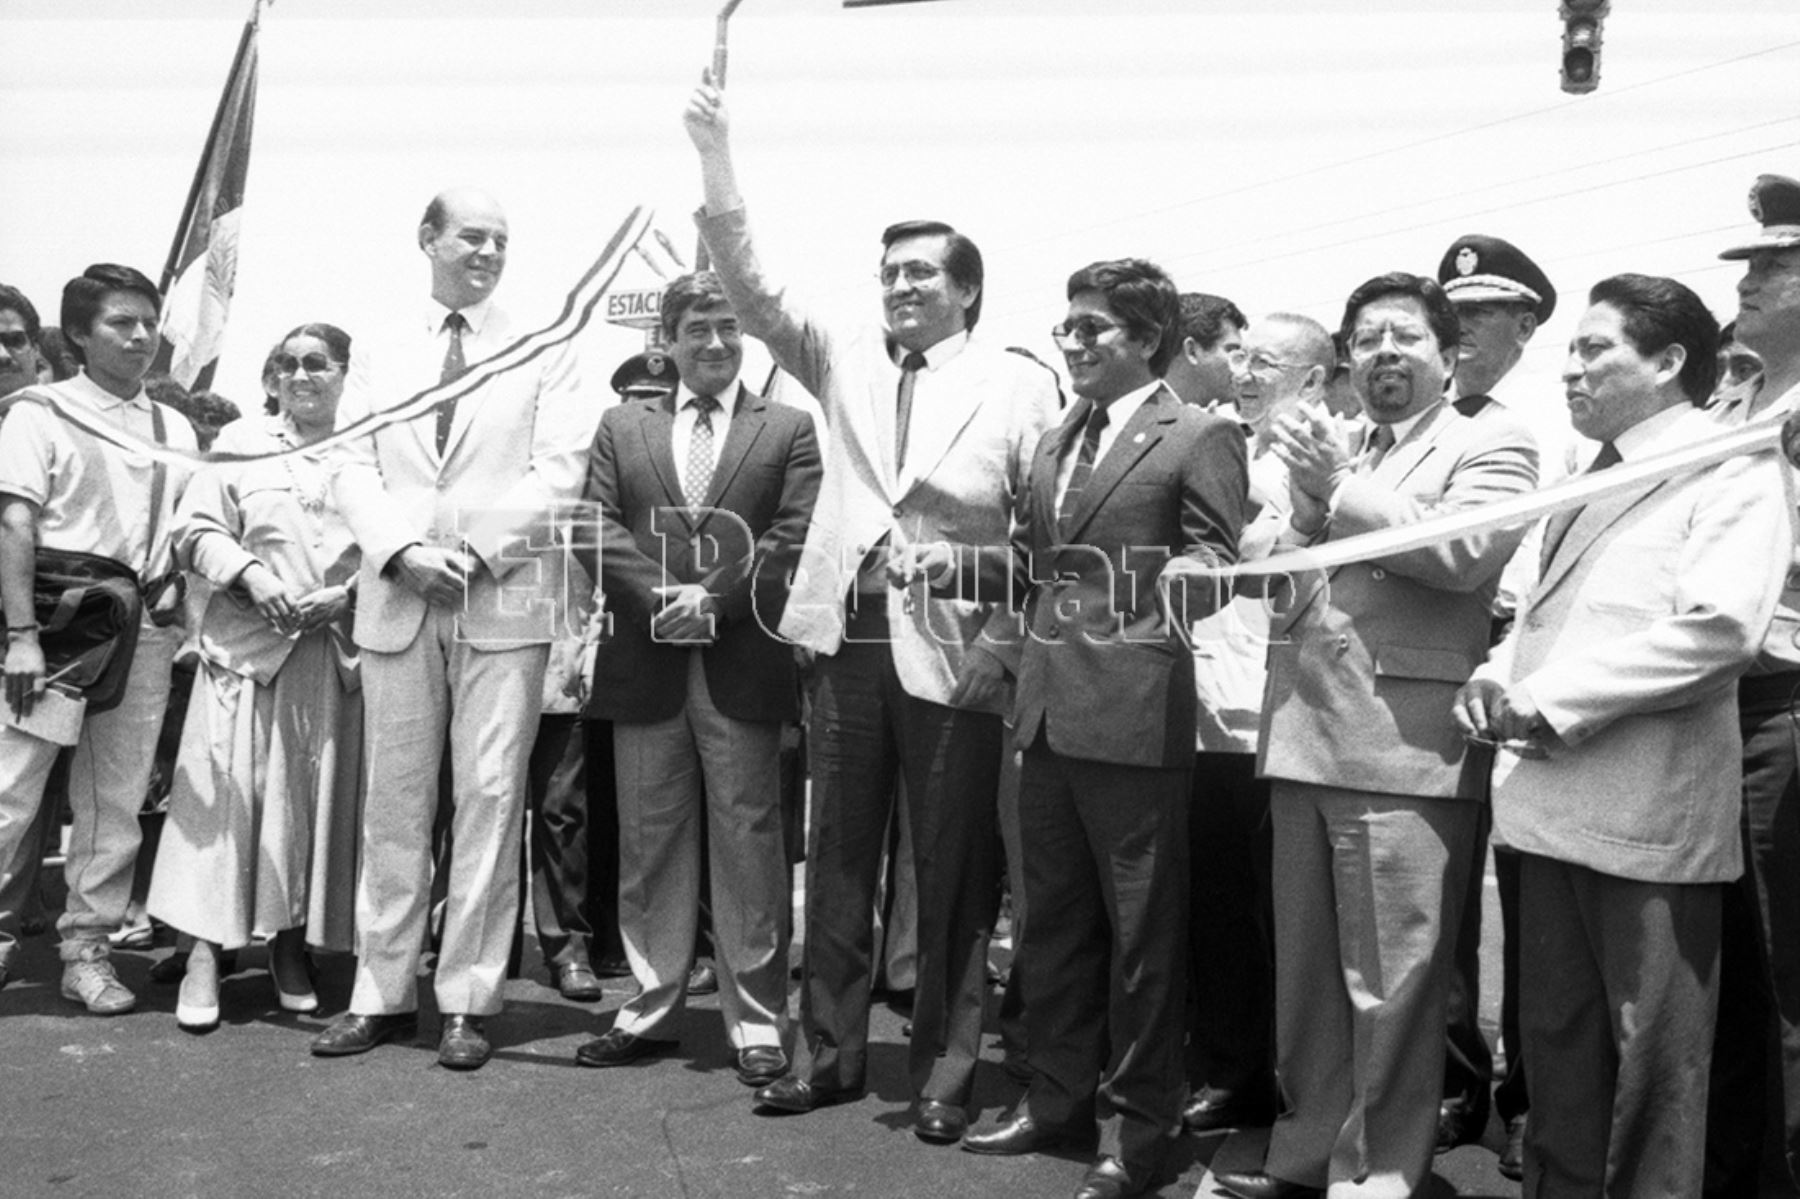 Lima - 30 diciembre 1988 / Jorge del Castillo, alcalde de Lima,  inaugura una avenida en Surquillo. Foto: Archivo Histórico de EL PERUANO / Luis Jiménez